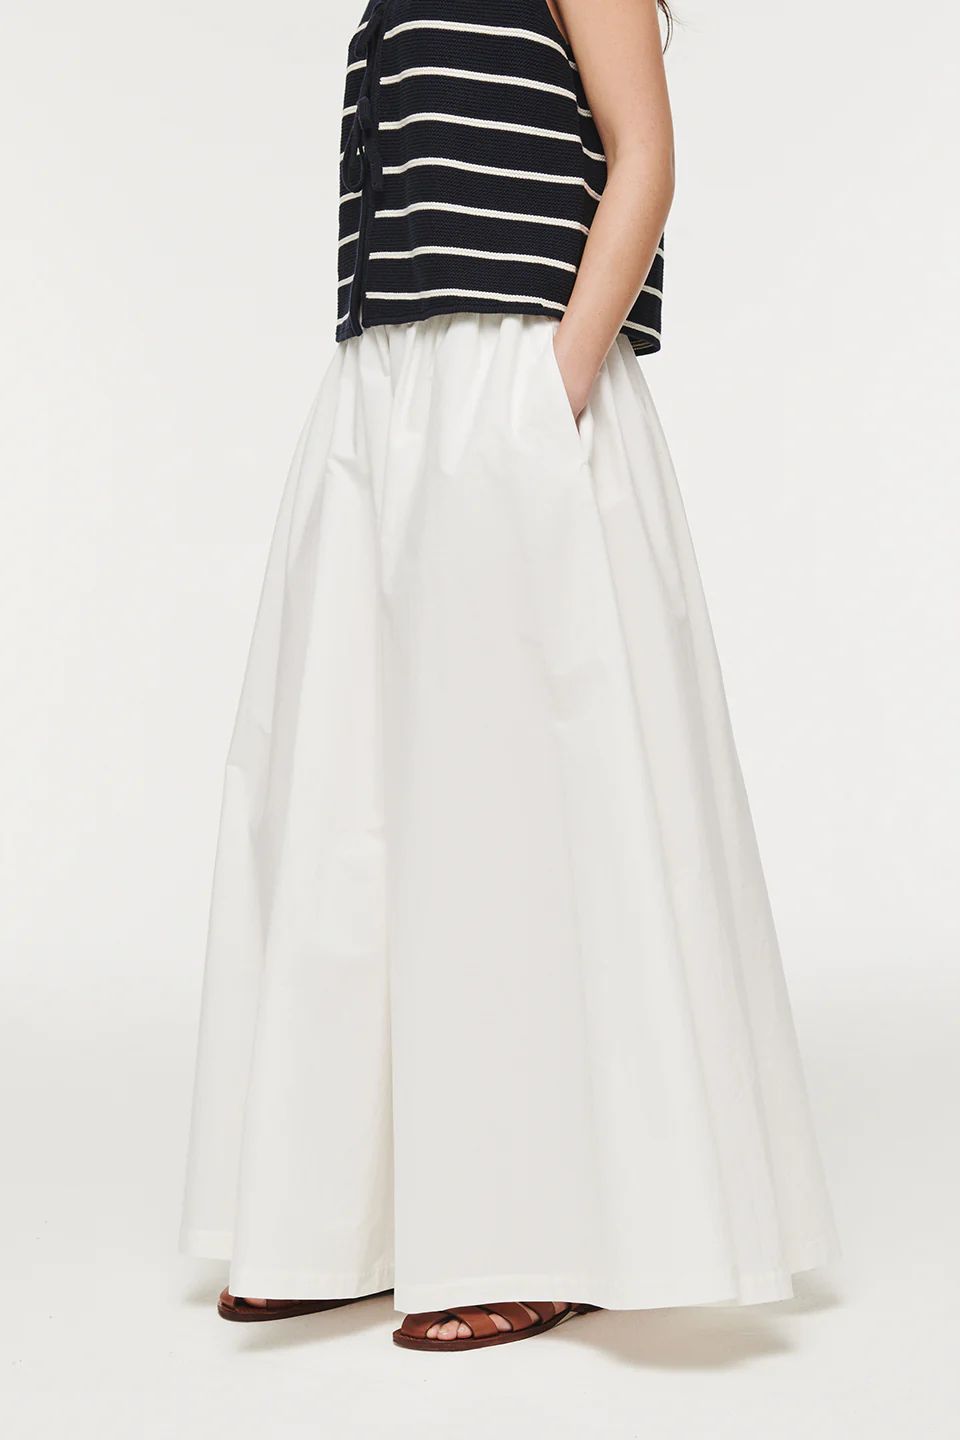 Natalie | Full Length Poplin Skirt in White | ALIGNE | ALIGNE USA